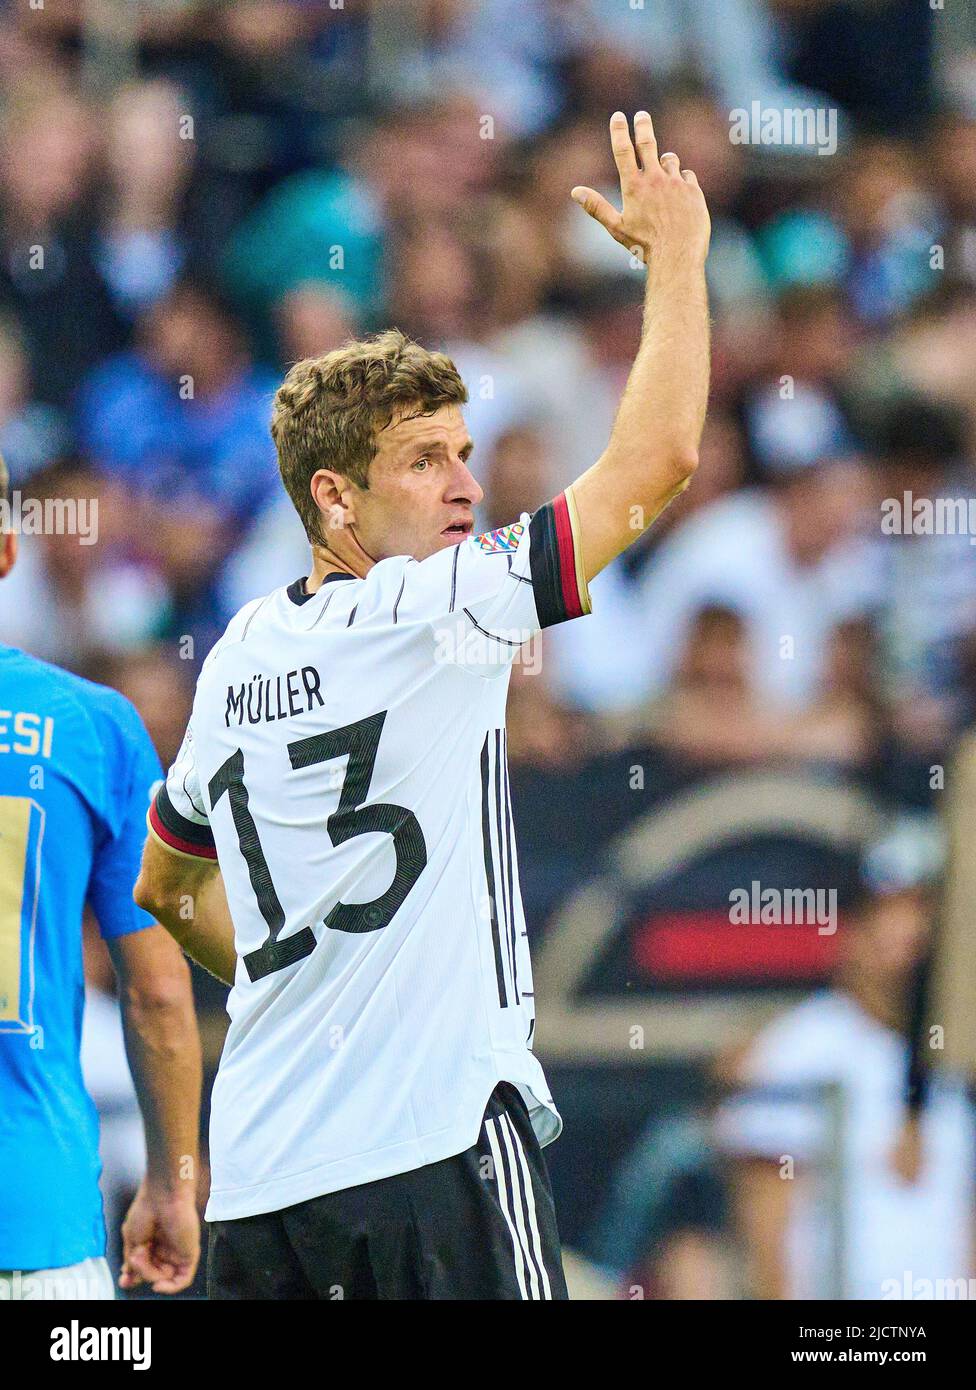 Thomas Müller, DFB 13 nella UEFA Nations League 2022 partita GERMANIA - ITALIA 5-2 nella stagione 2022/2023 giugno 14, 2022 a Mönchengladbach, Germania. © Peter Schatz / Alamy Live News Foto Stock